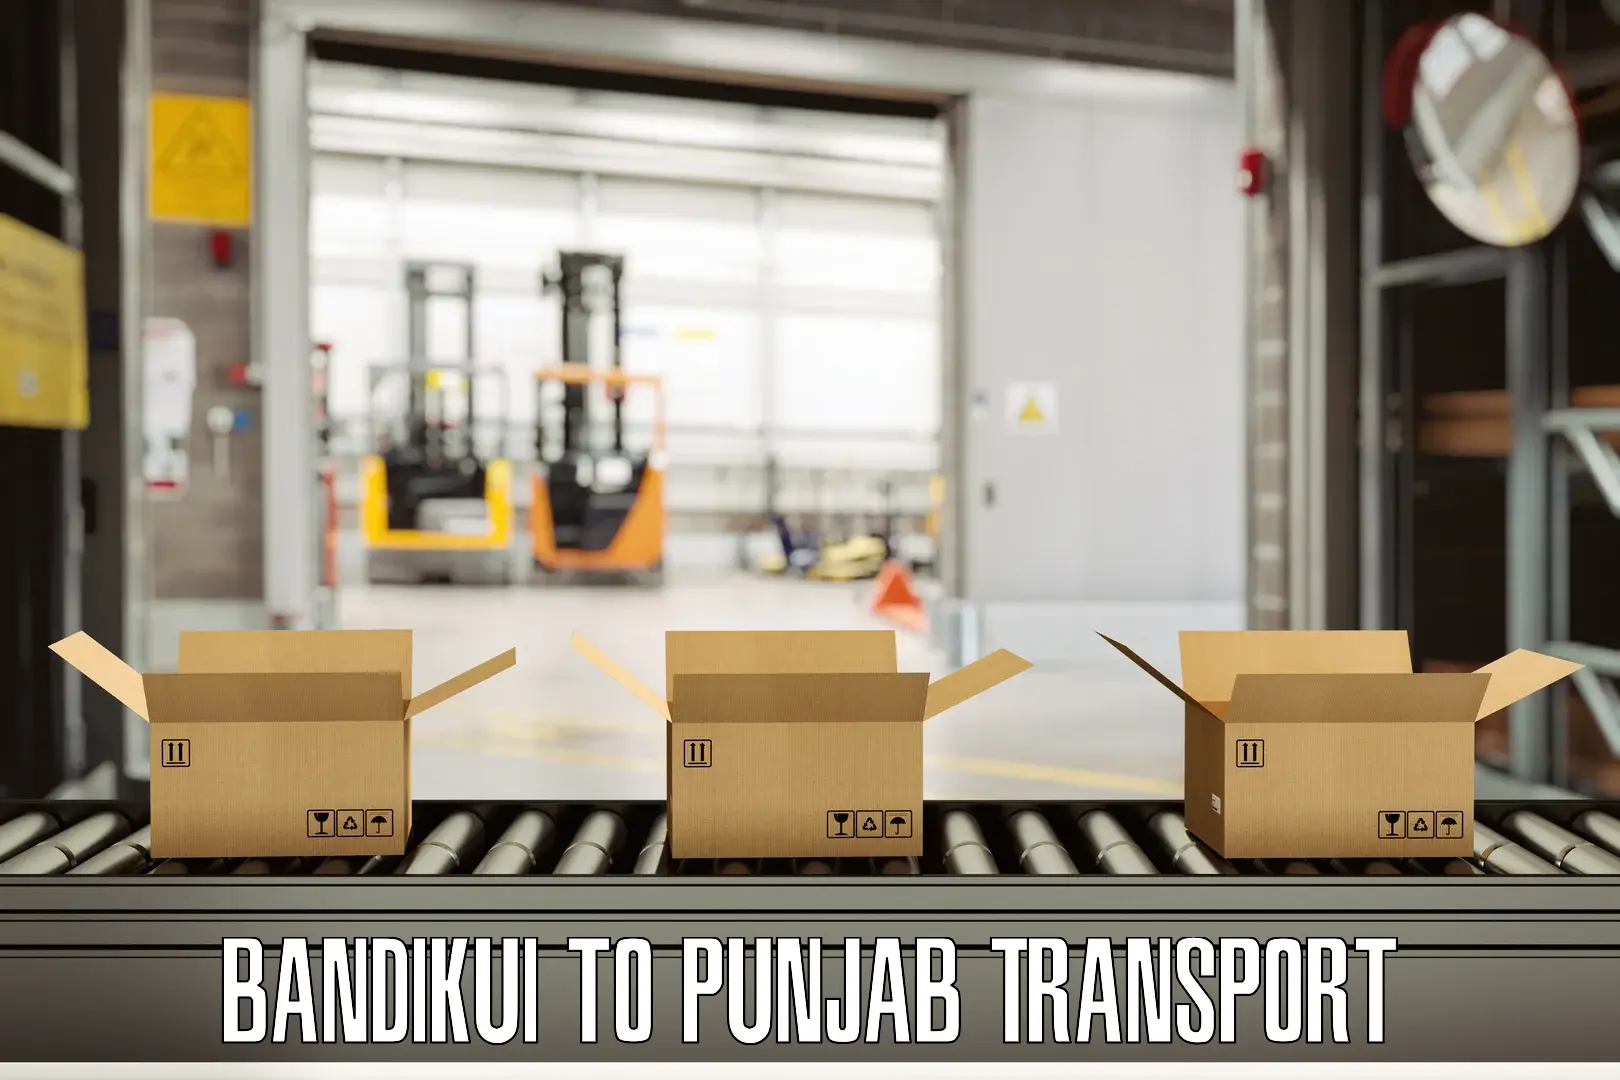 Express transport services in Bandikui to Punjab